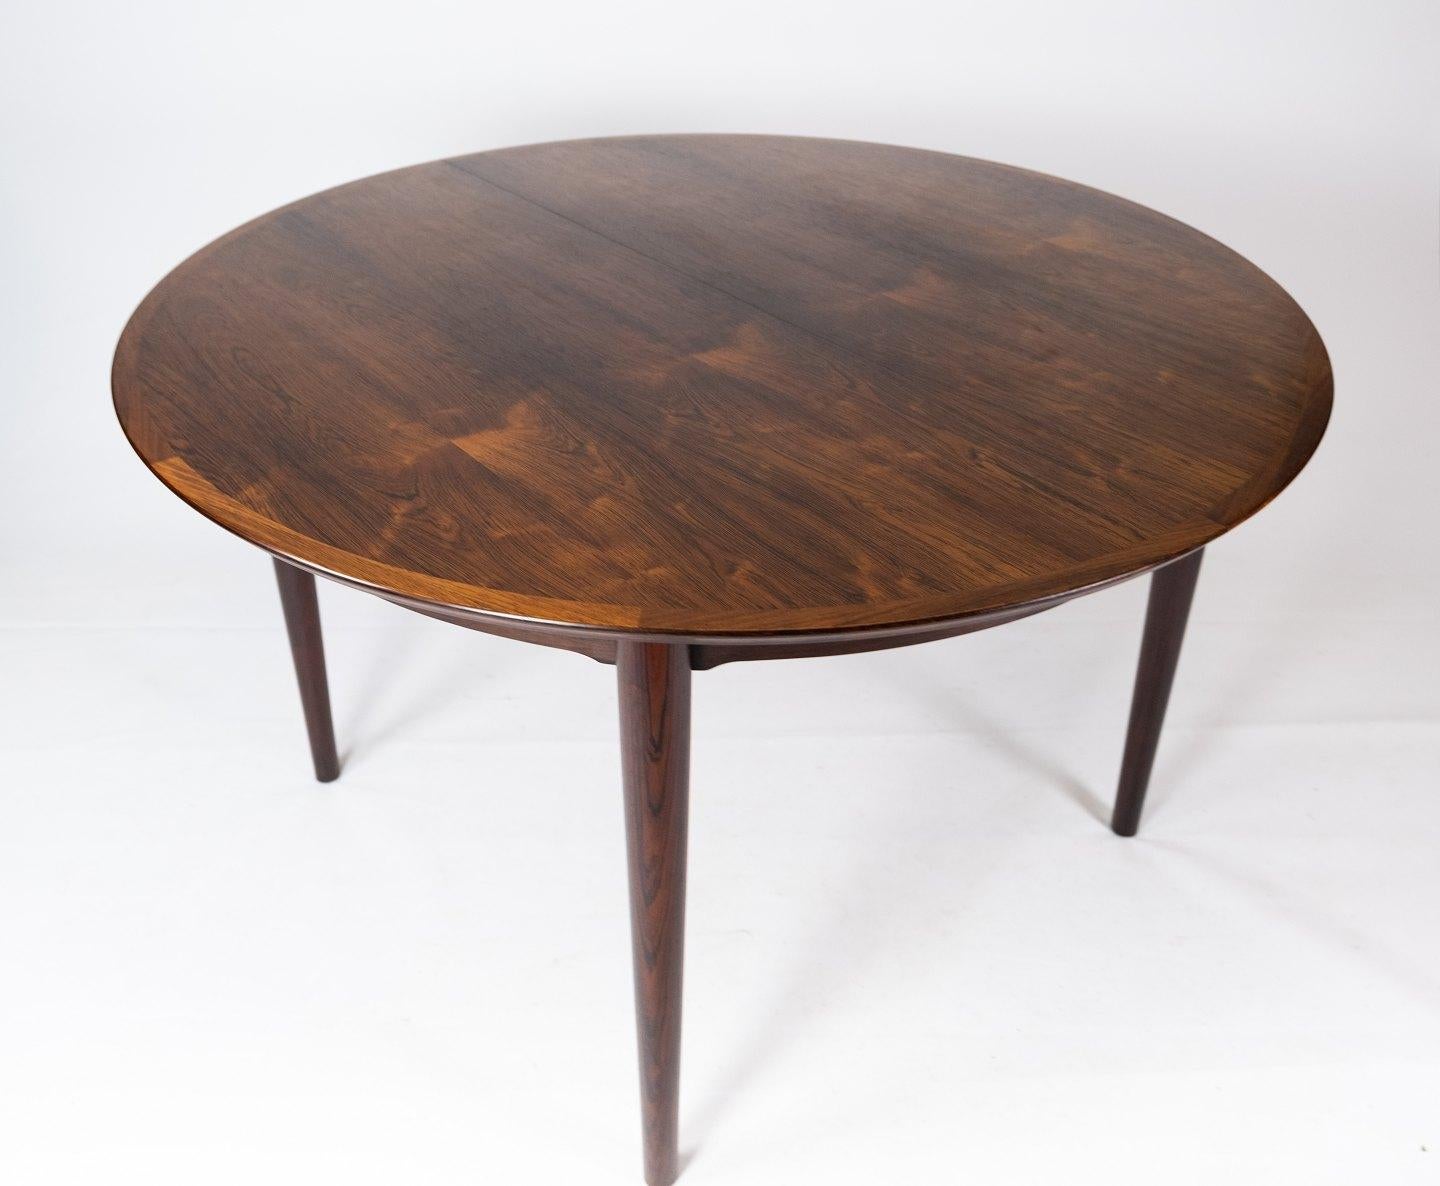 Dieser Esstisch aus Palisanderholz wurde von dem bekannten dänischen Möbeldesigner Arne Vodder entworfen und stammt aus den 1960er Jahren. Der Tisch ist ein schönes Beispiel für die zeitgemäße Eleganz und Handwerkskunst, die Vodders Design